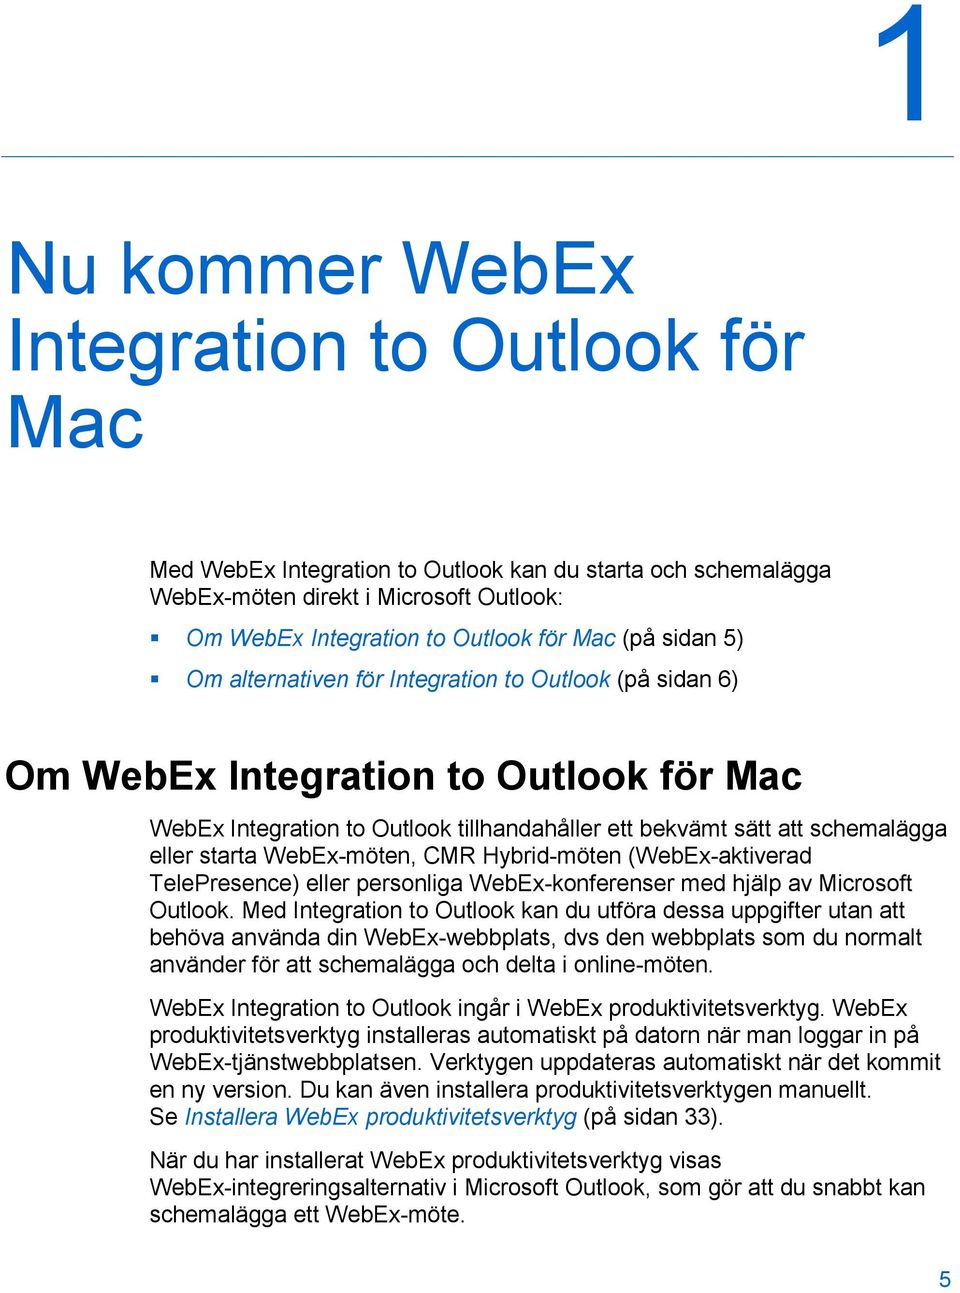 starta WebEx-möten, CMR Hybrid-möten (WebEx-aktiverad TelePresence) eller personliga WebEx-konferenser med hjälp av Microsoft Outlook.